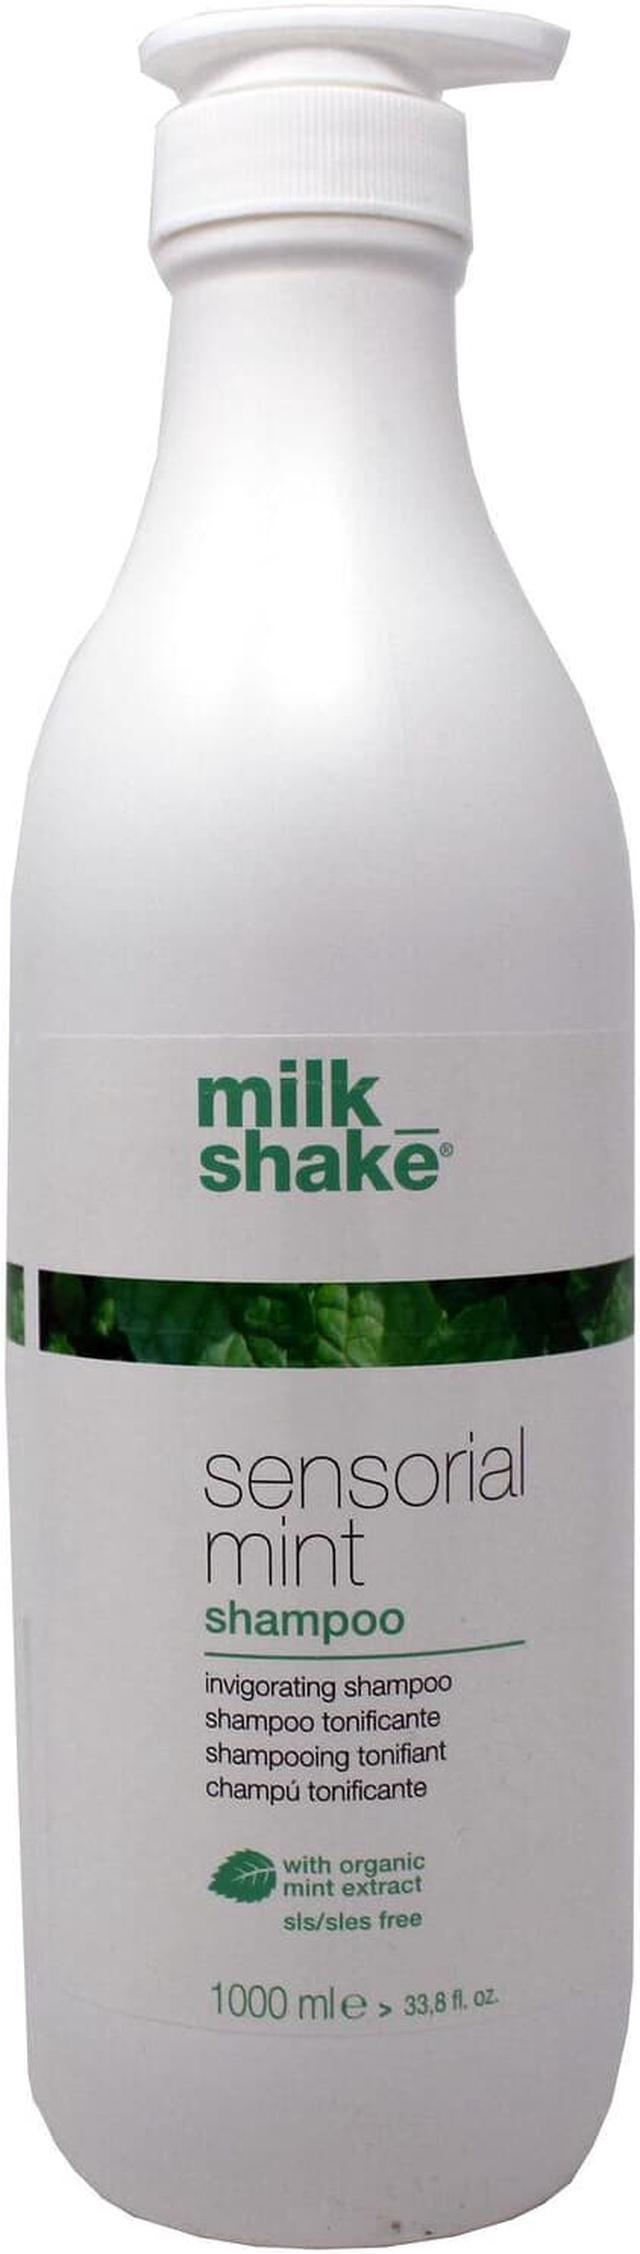 Shake Sensorial Mint Shampoo 33.8oz Care Newegg.com